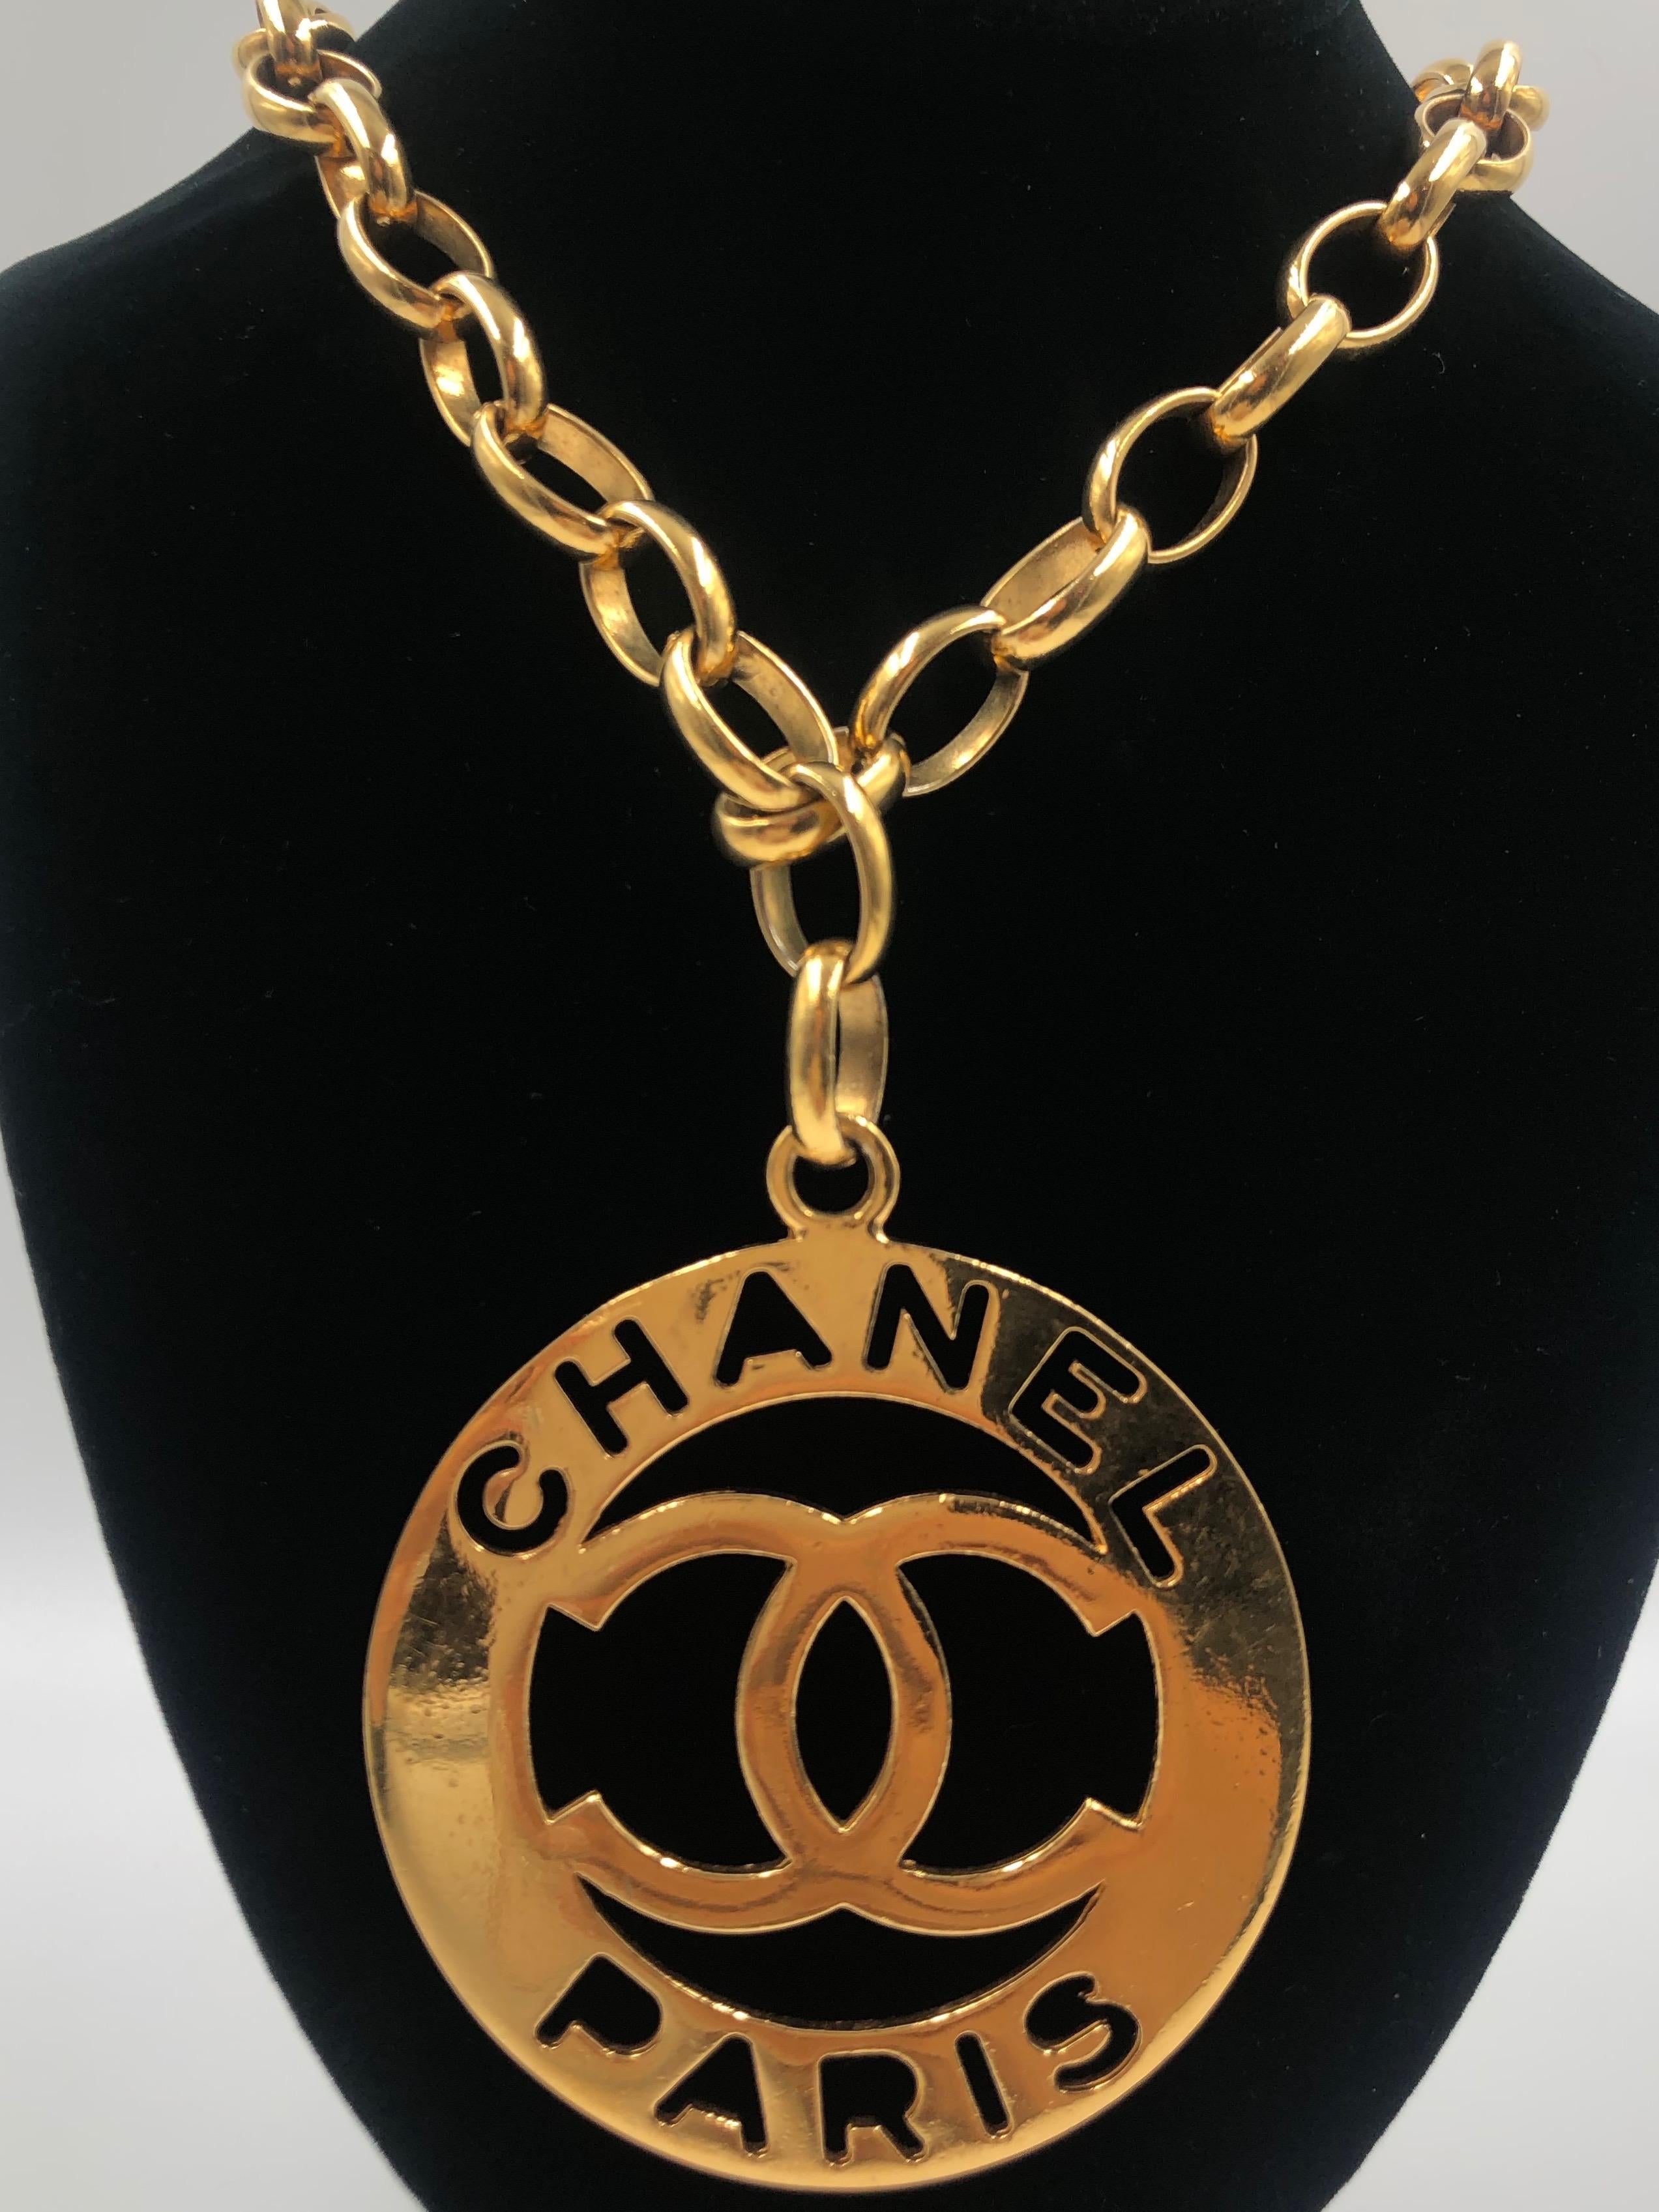 Chanel CC Medaillon Gold-Ton große Aussage Halskette 1980er Jahre. Früher in Besitz In gutem Vintage-Zustand. Chanel-Stempel befindet sich auf dem Hakenverschluss. (siehe Fotos als Referenz)
Perfekt für die Fashionista Rapper und ein tolles